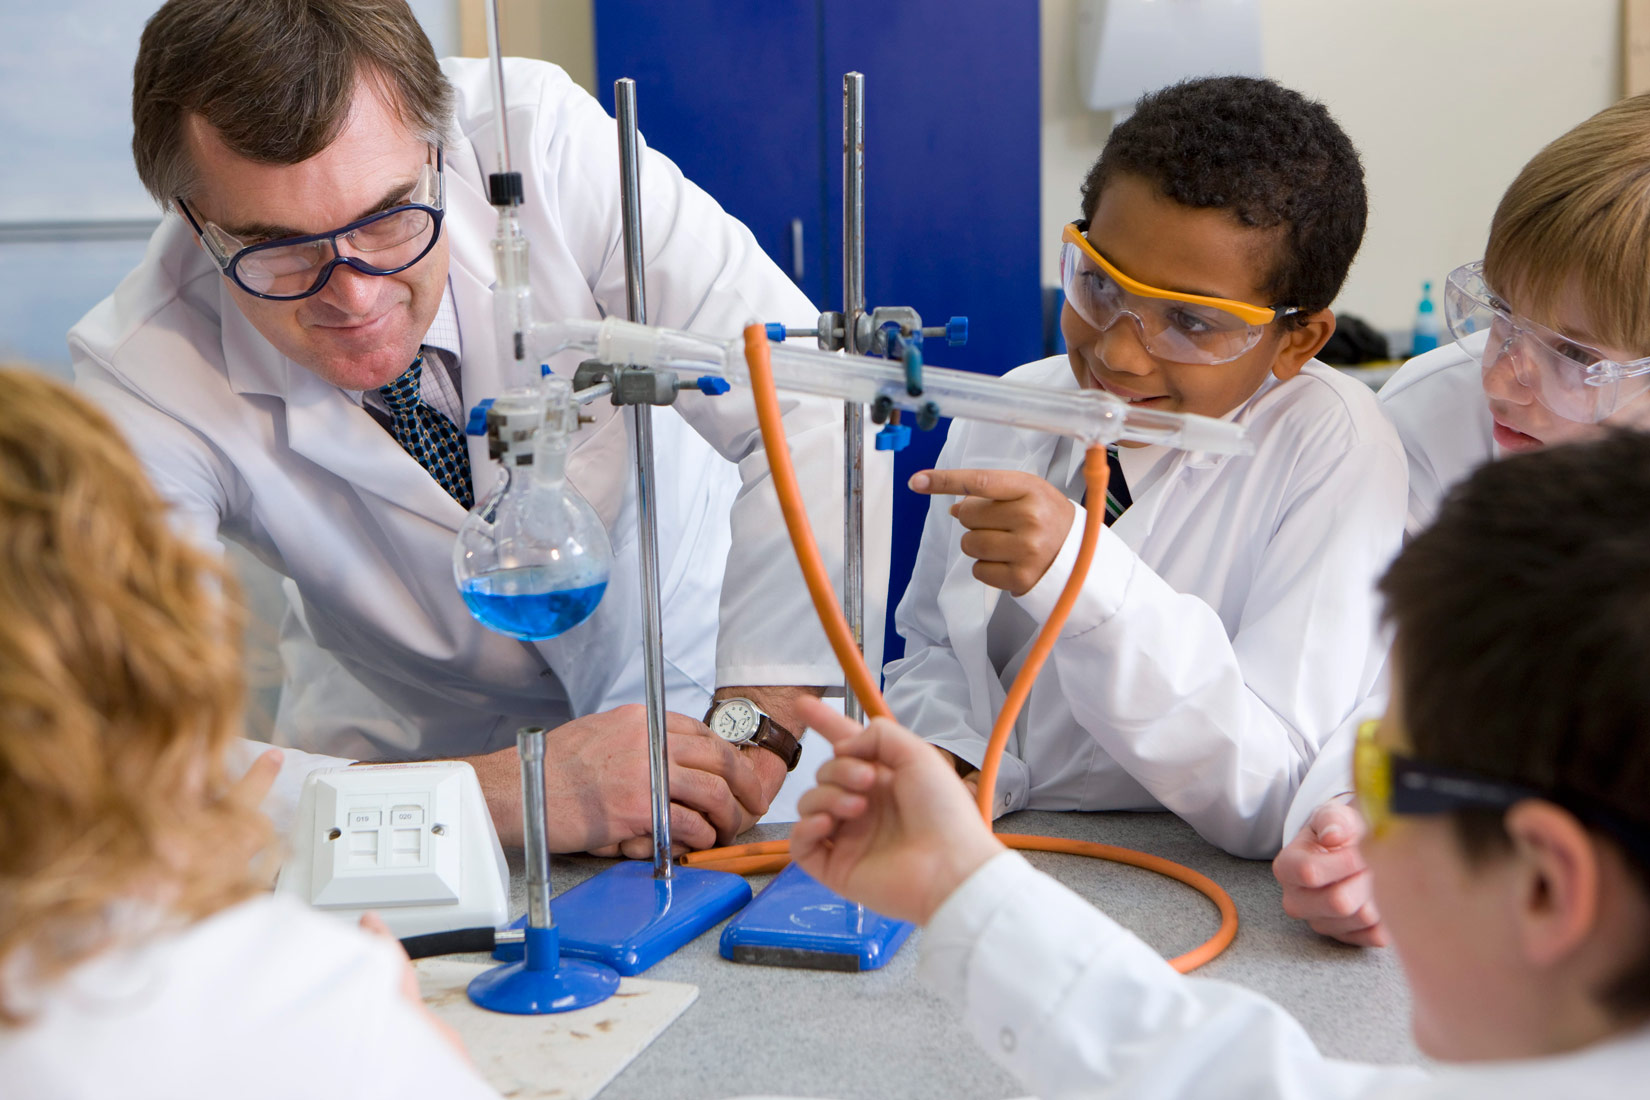 Na slici je prikazana aparatura za destilaciju u kemijskom laboratoriju- učionici. Učenici okupljeni oko svoga učitelja pokazuju prstom što se zbiva tijekom procesa. Na slici su prikazana tri učenika i učenica s leđa.Svi nose zaštitnu opremu (bijele kute, naočale ).